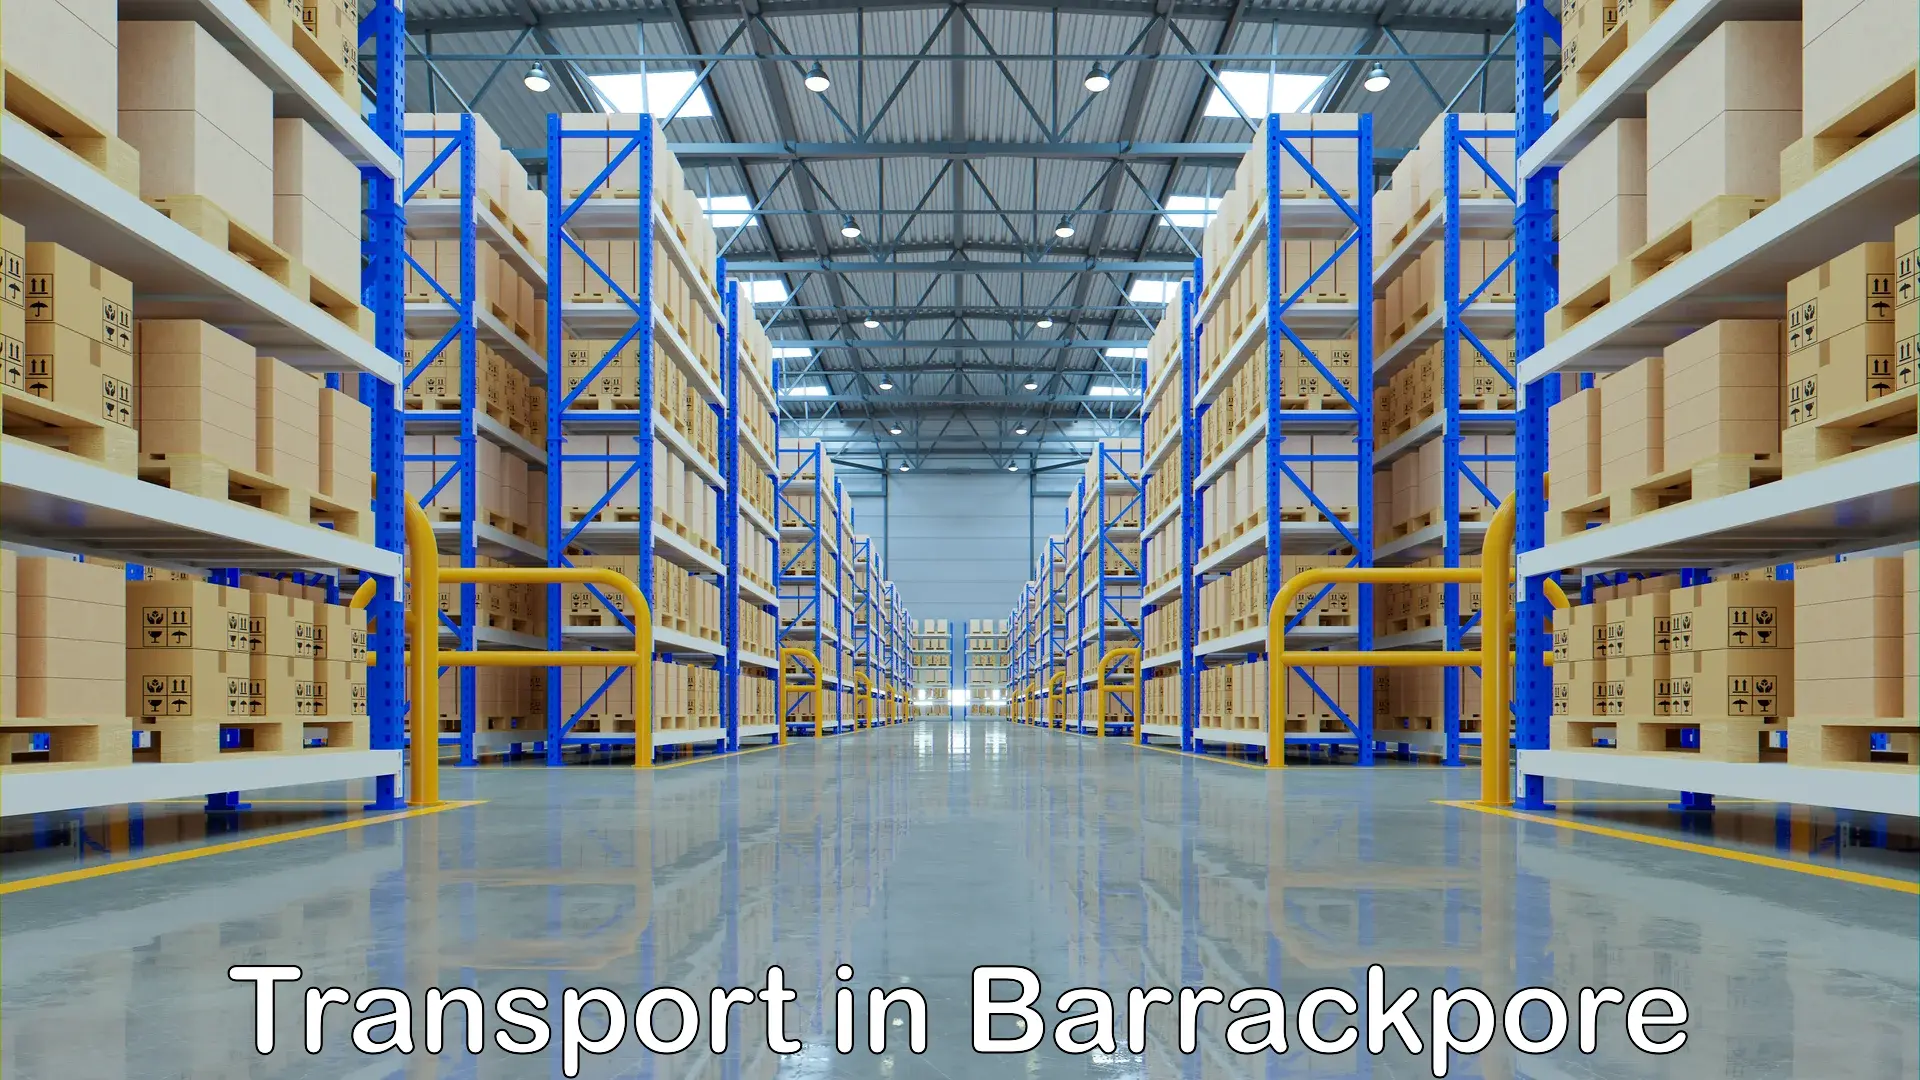 Furniture transport service in Barrackpore